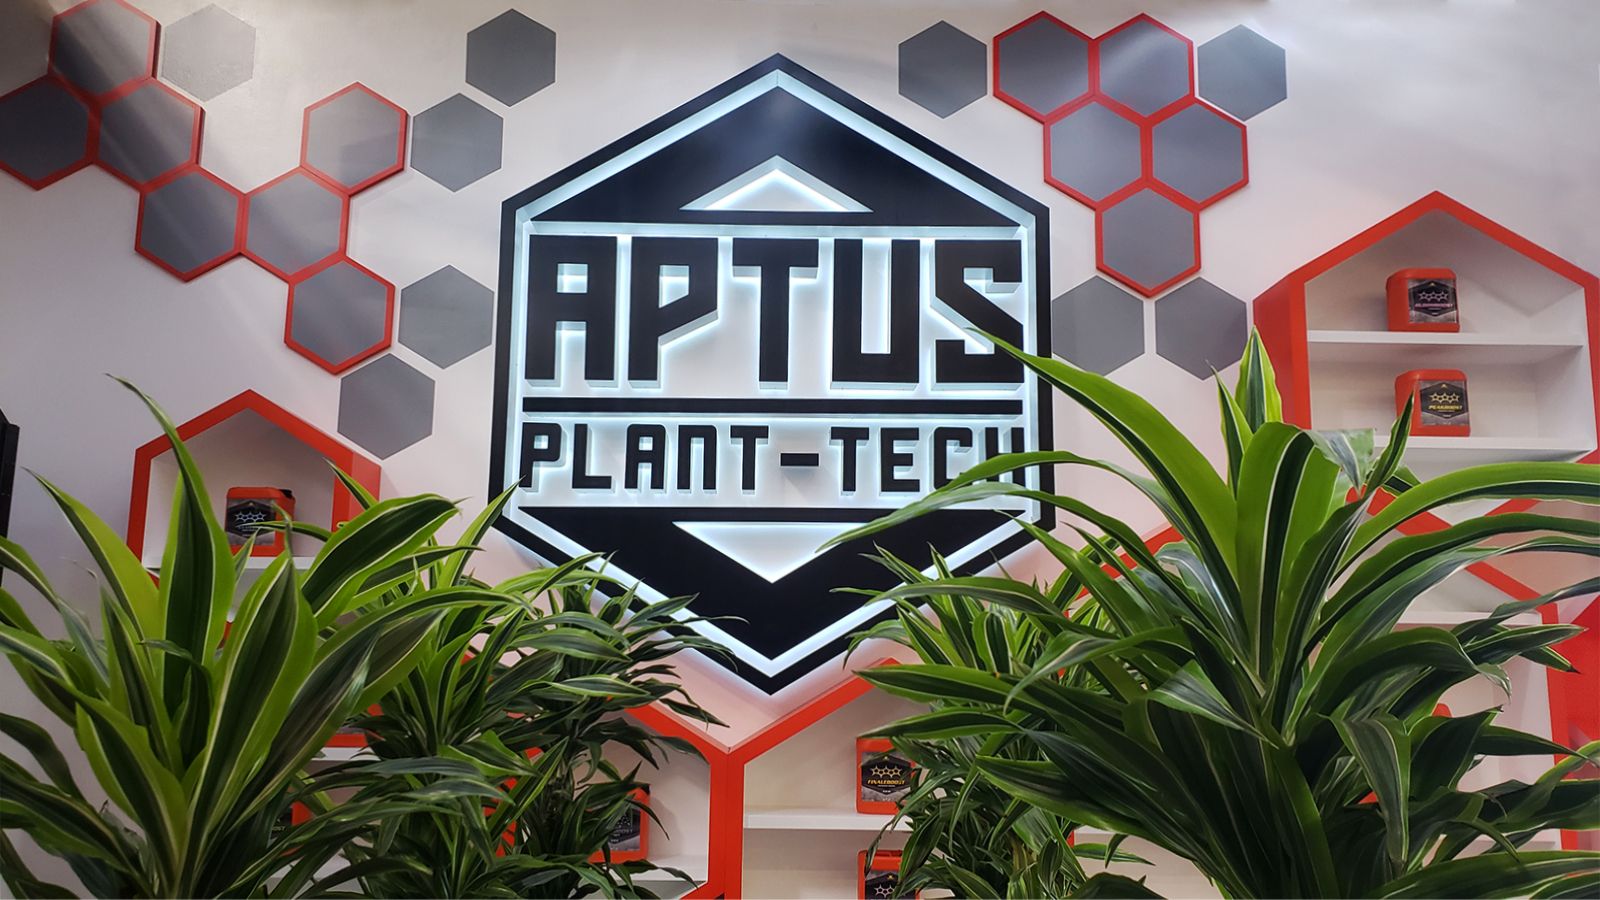 Aptus plant-tech channel letters